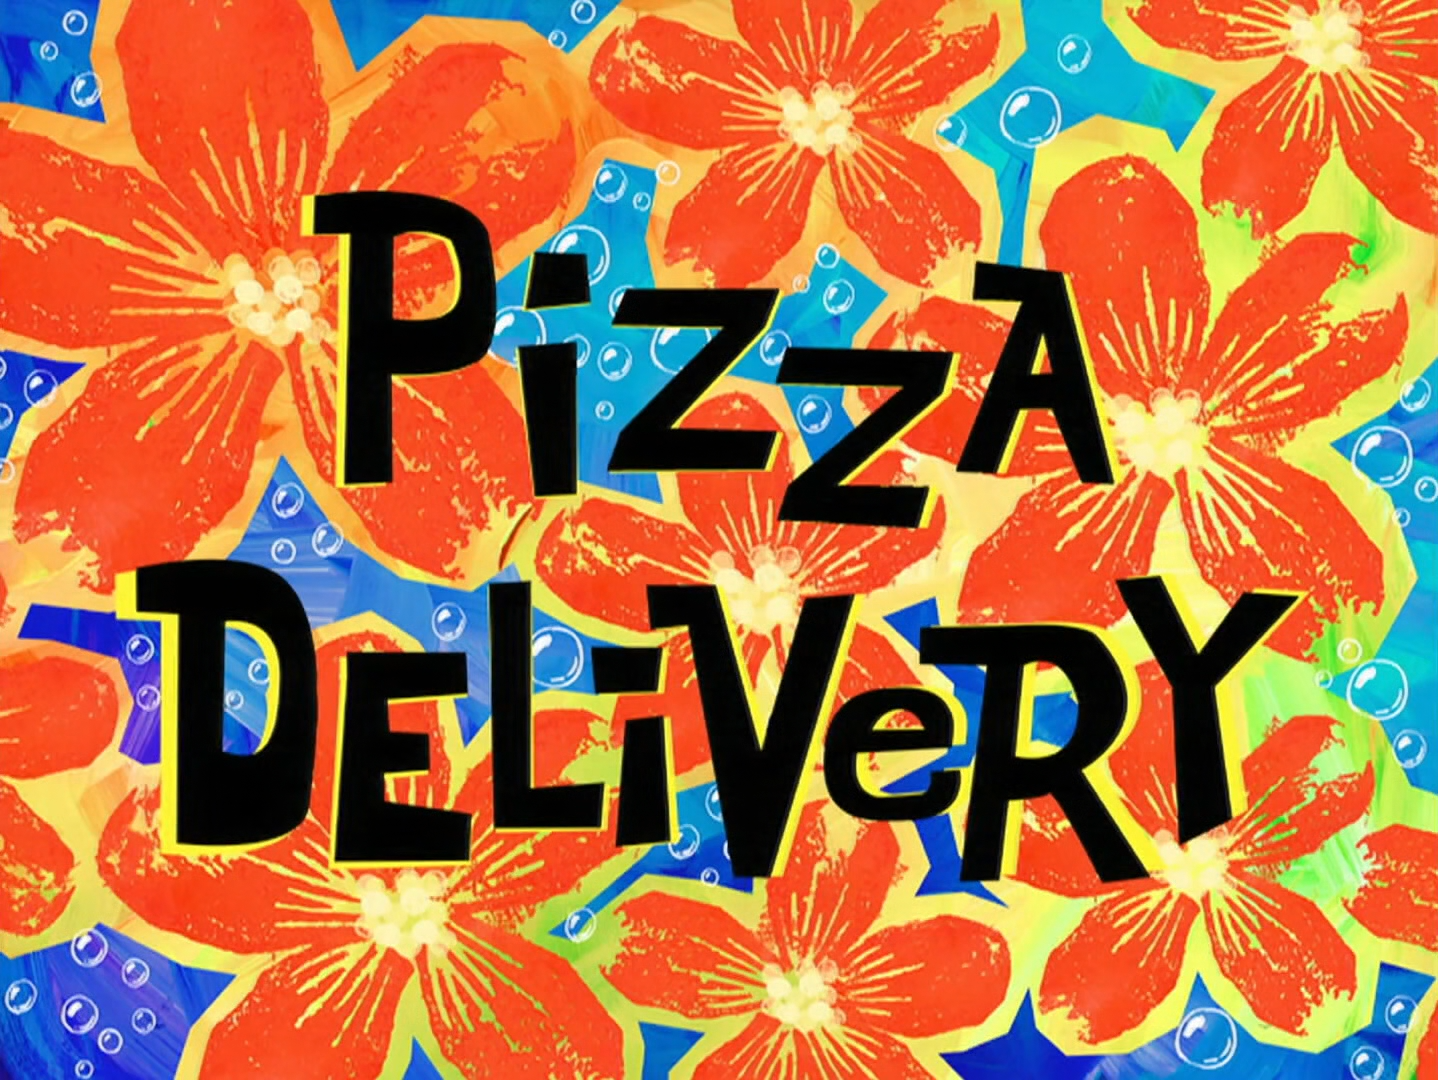 Prime Same-Day Delivery Rocks! - Pizza In Motion